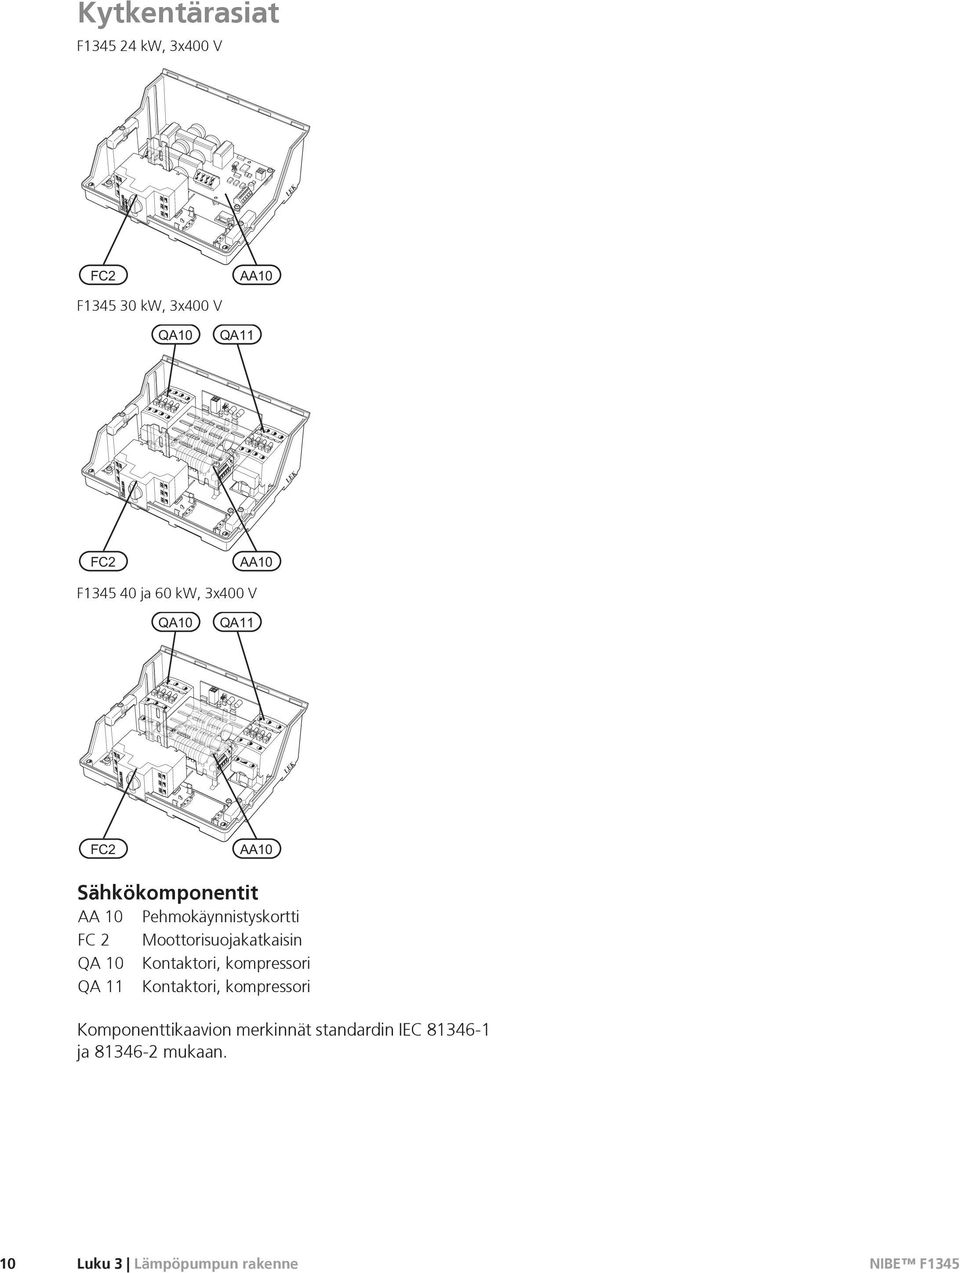 Moottorisuojakatkaisin QA 10 Kontaktori, kompressori QA 11 Kontaktori, kompressori